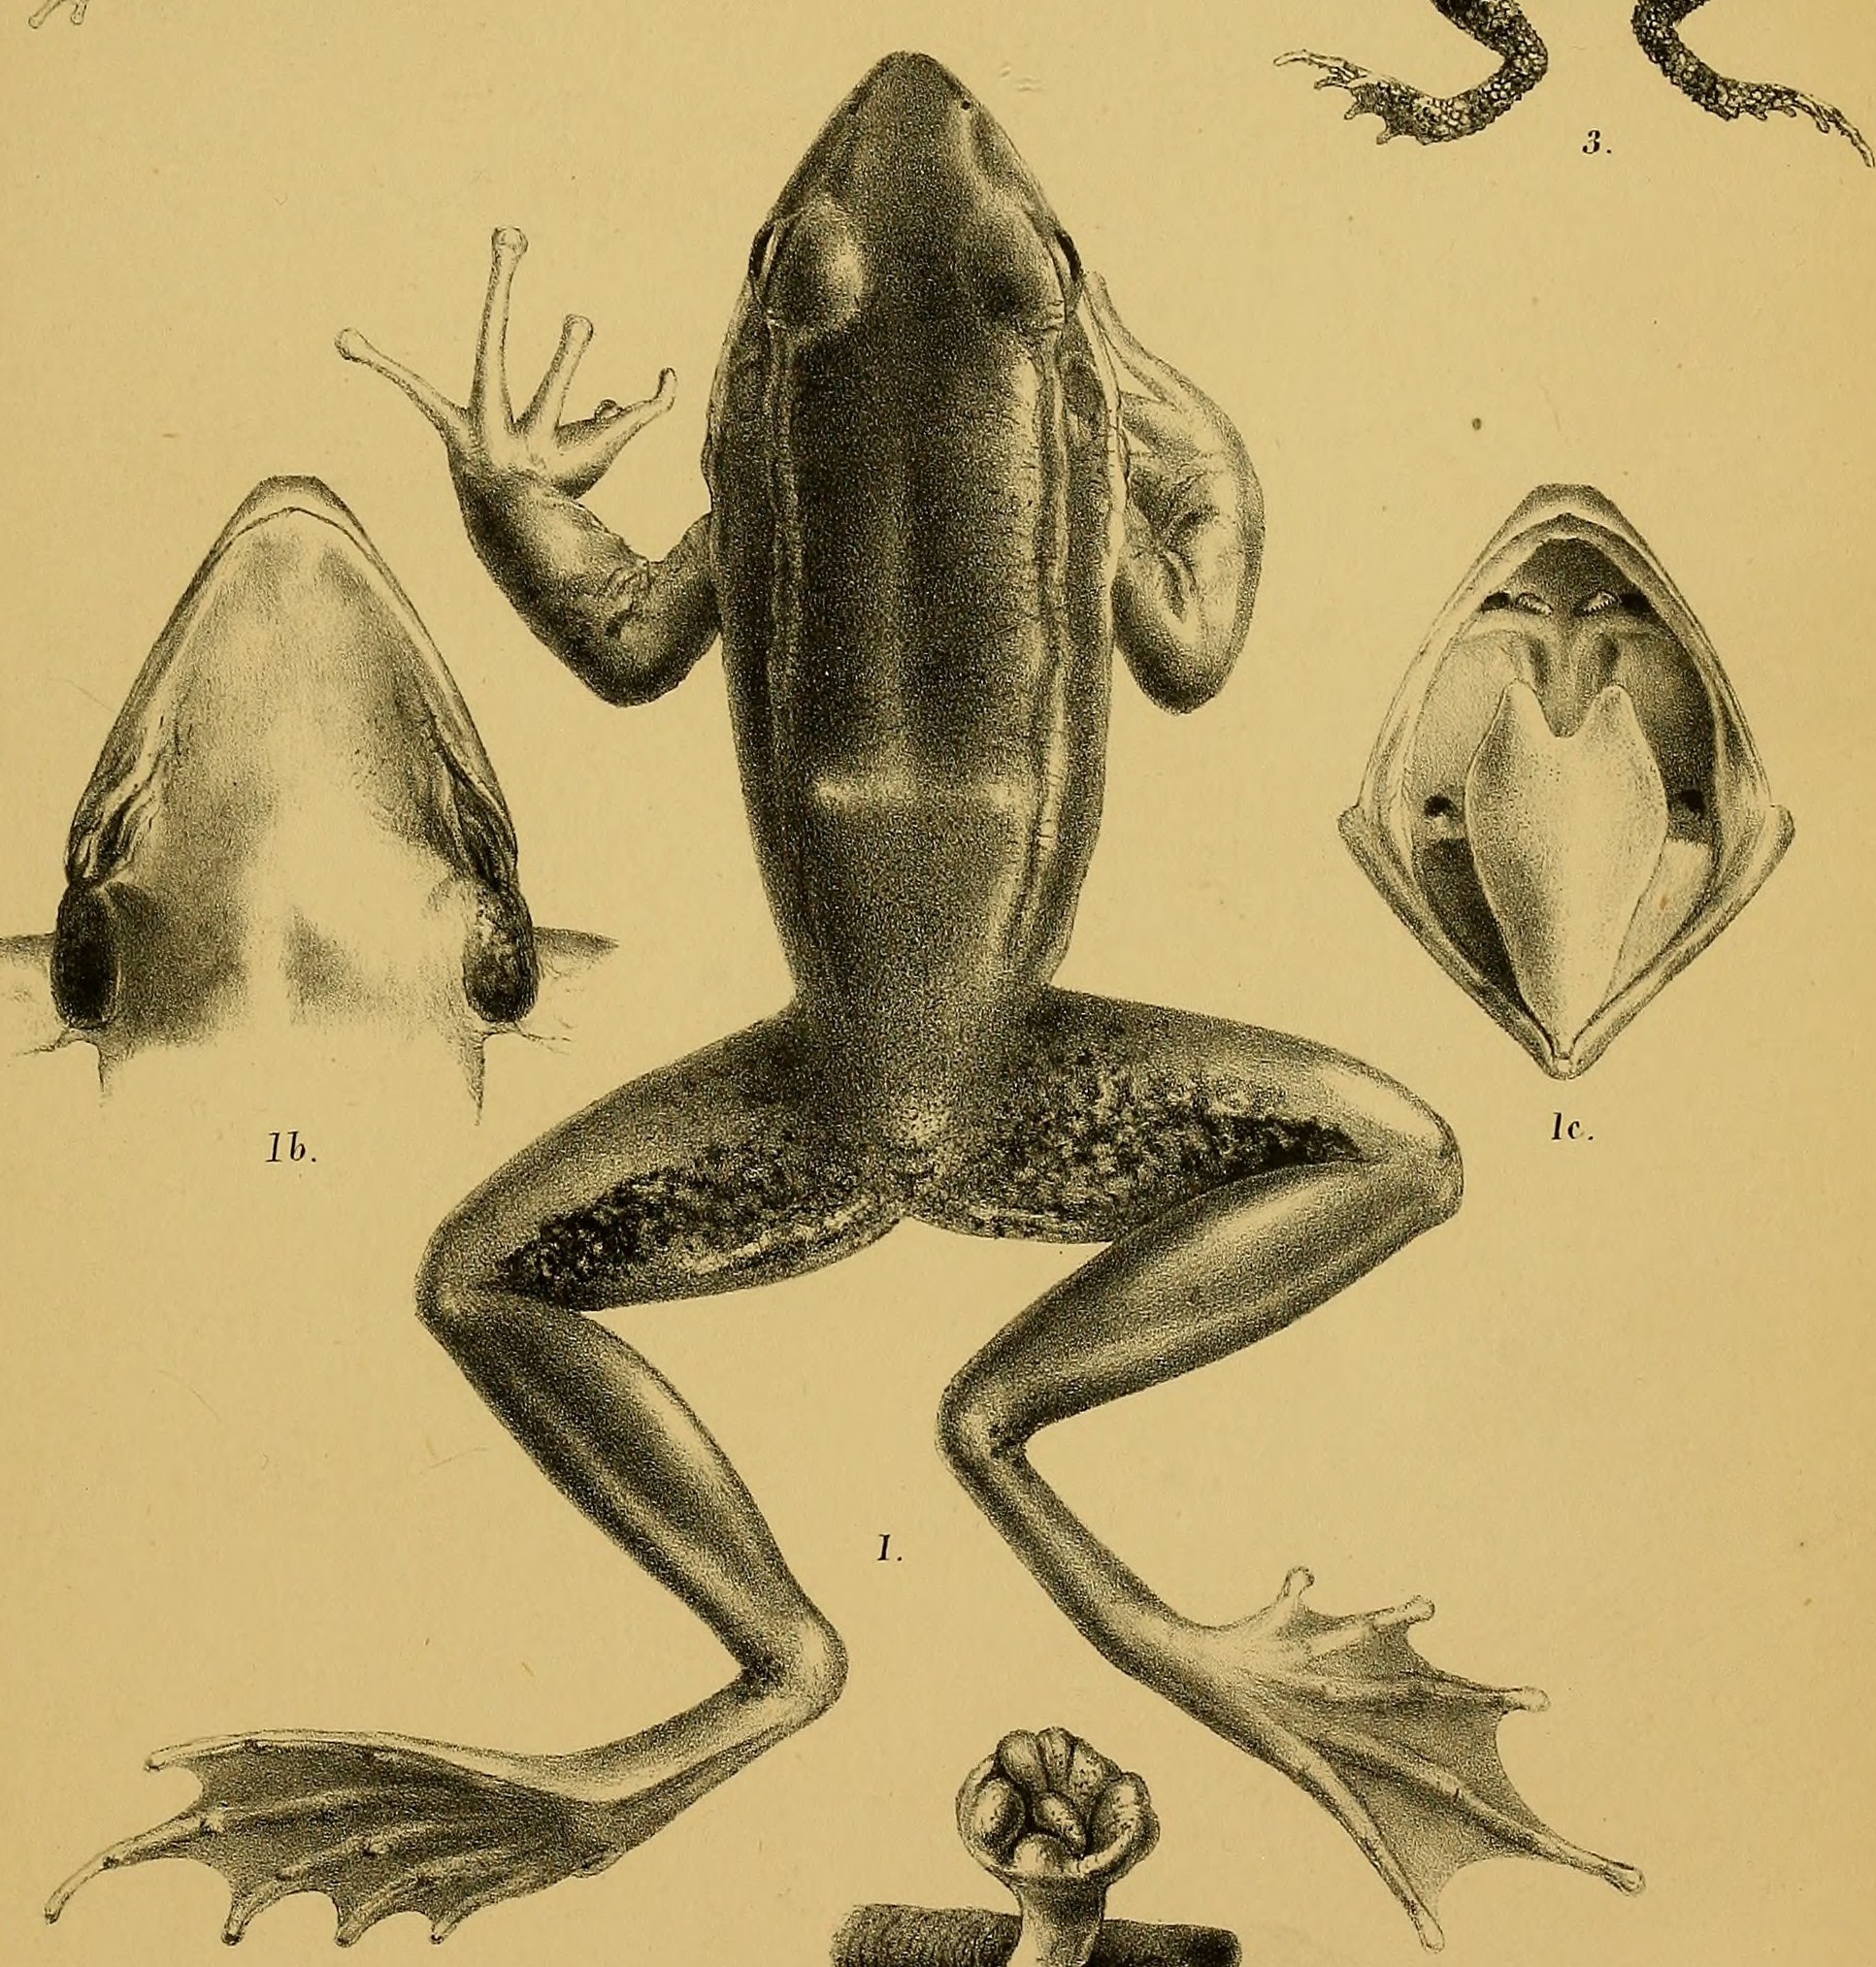 Image of Bhamo Frog